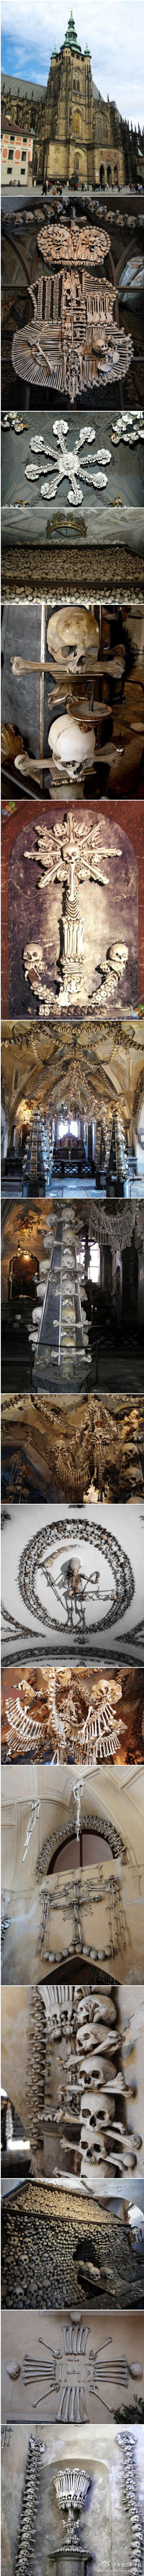 赛德莱克教堂因其用数万块人骨装饰而闻名全球。这项令人毛骨悚然的内部装饰风格是捷克木雕艺人弗兰蒂塞克·林特(Frantisek Rint)的杰作。出于某种原因，林特受雇将教堂遗骨排列成各种图案.据悉，这座“人骨博物馆”平…